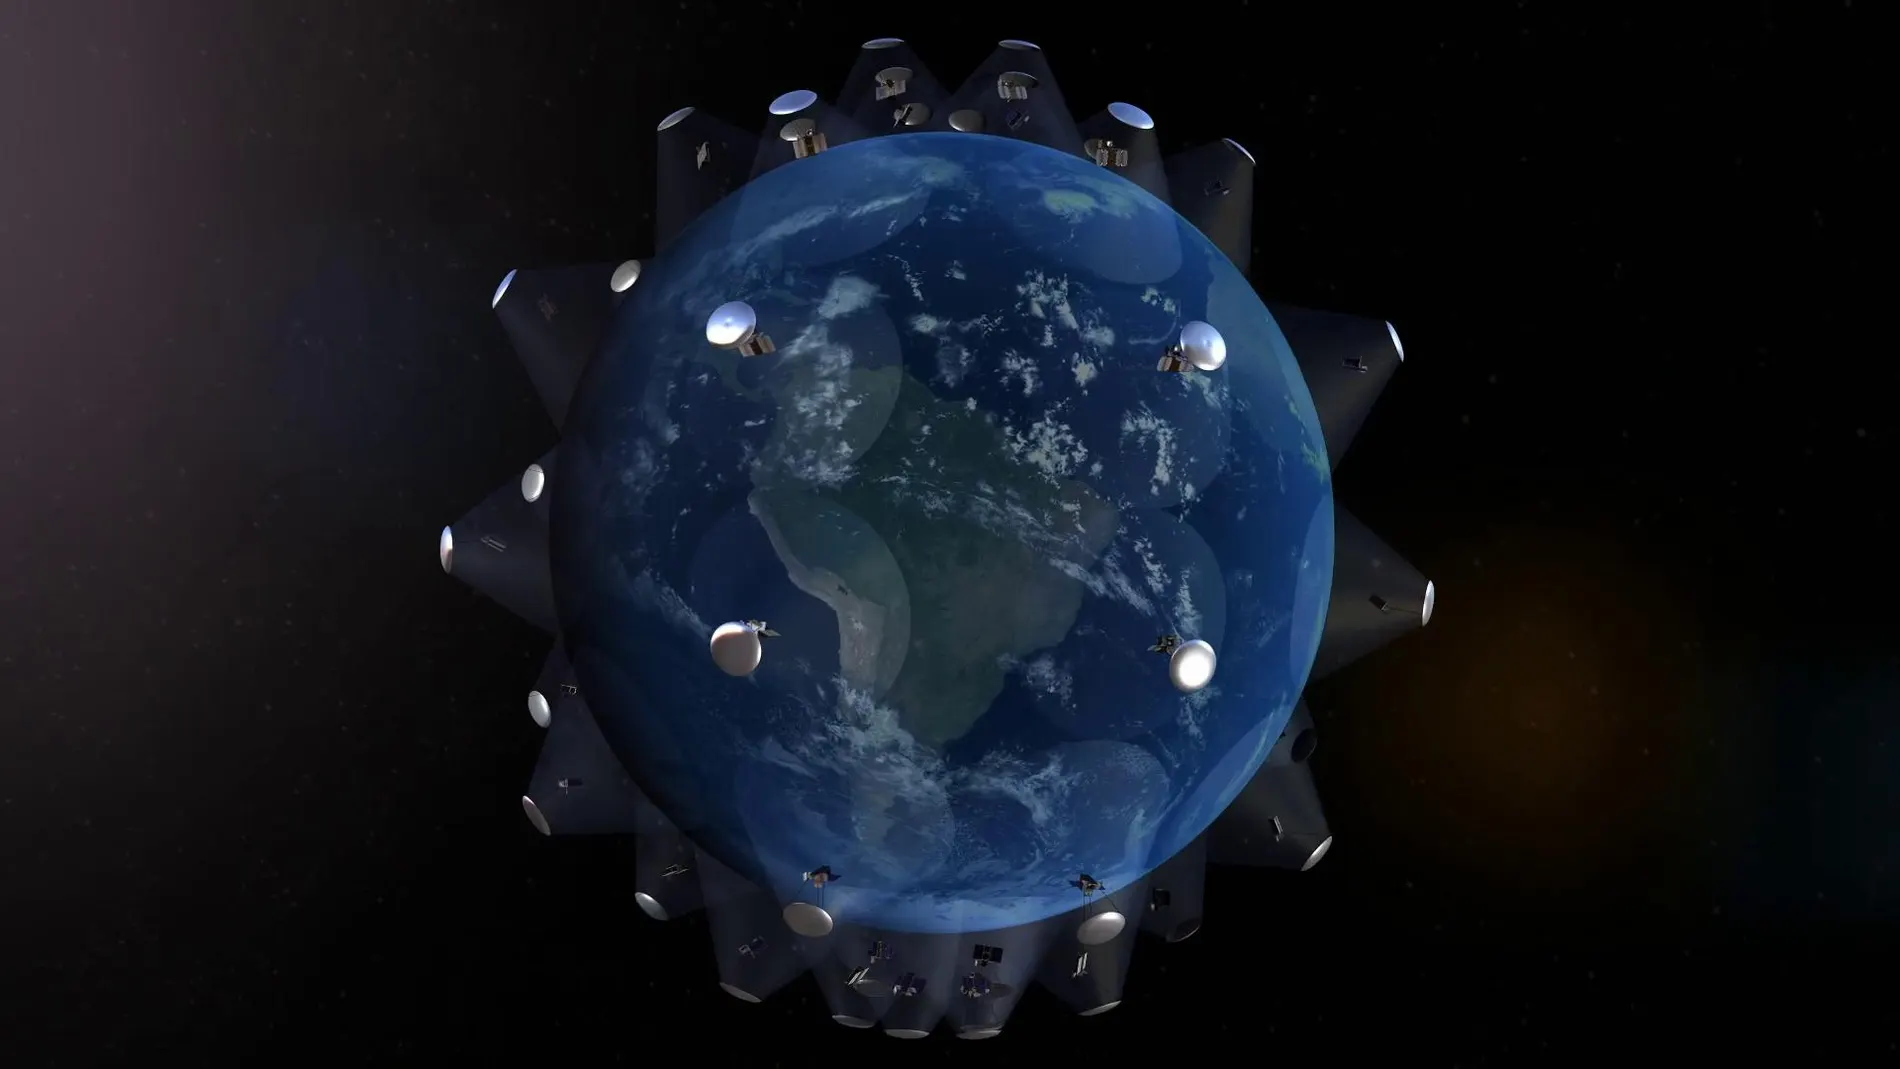 La constelación BeetleSat lanzará la primera misión de demostración en abril de 2022